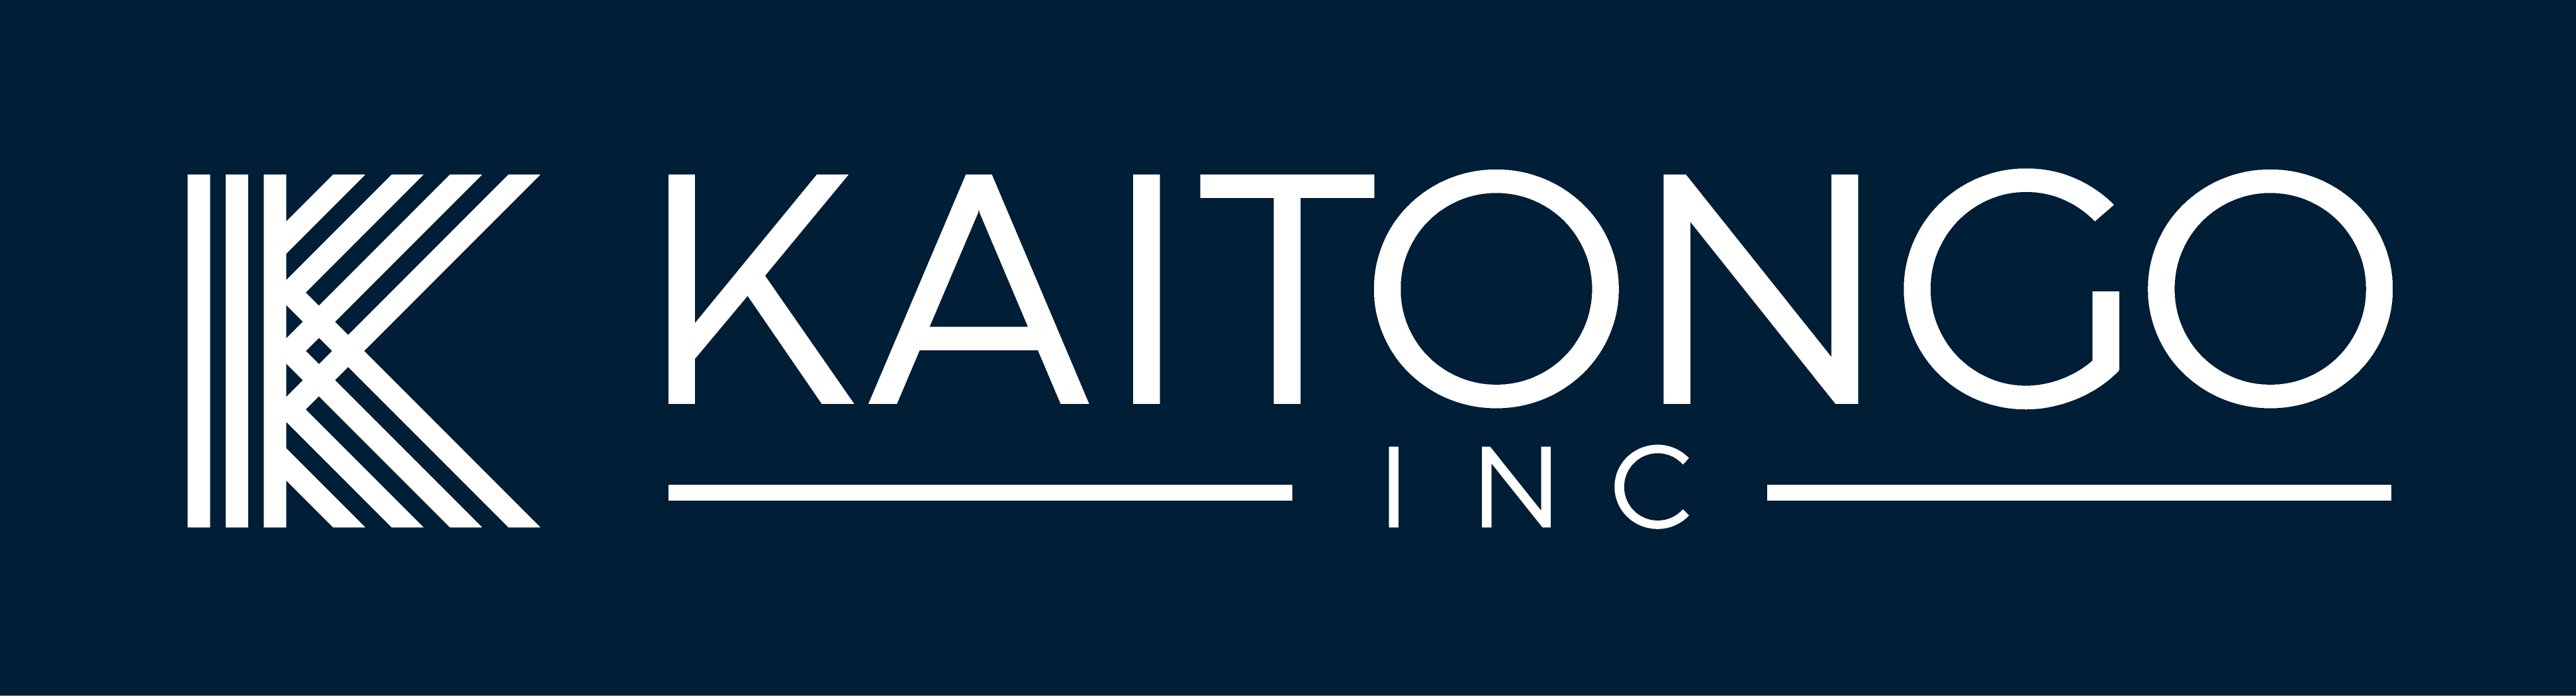 Kaitongo Inc.